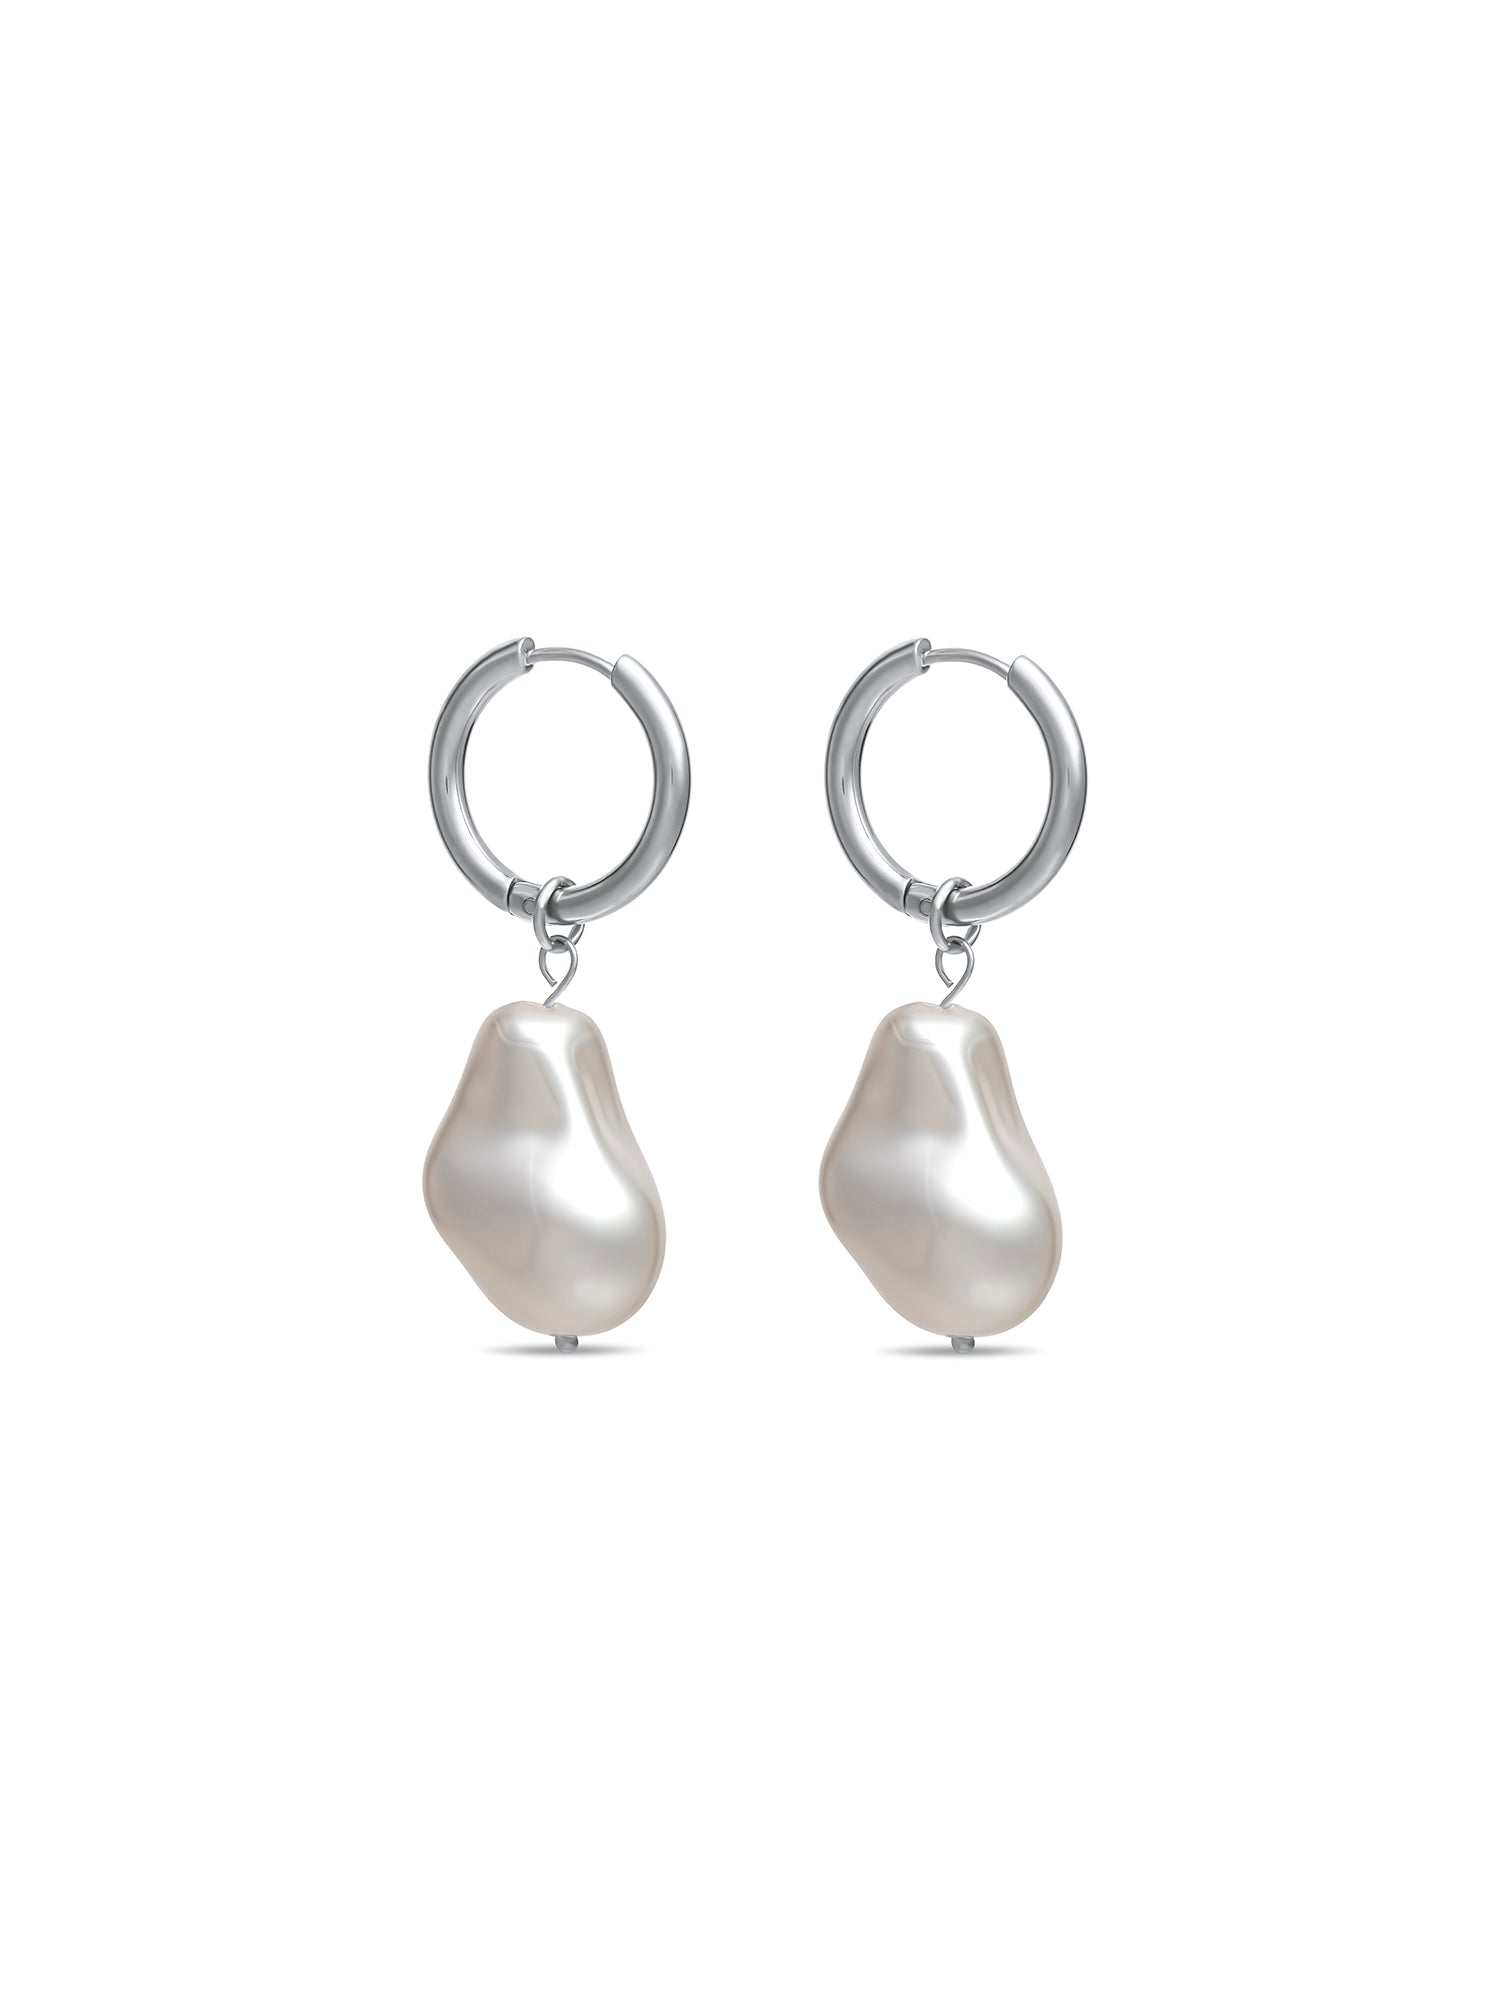 Pearl Hoop Earrings - White Gold